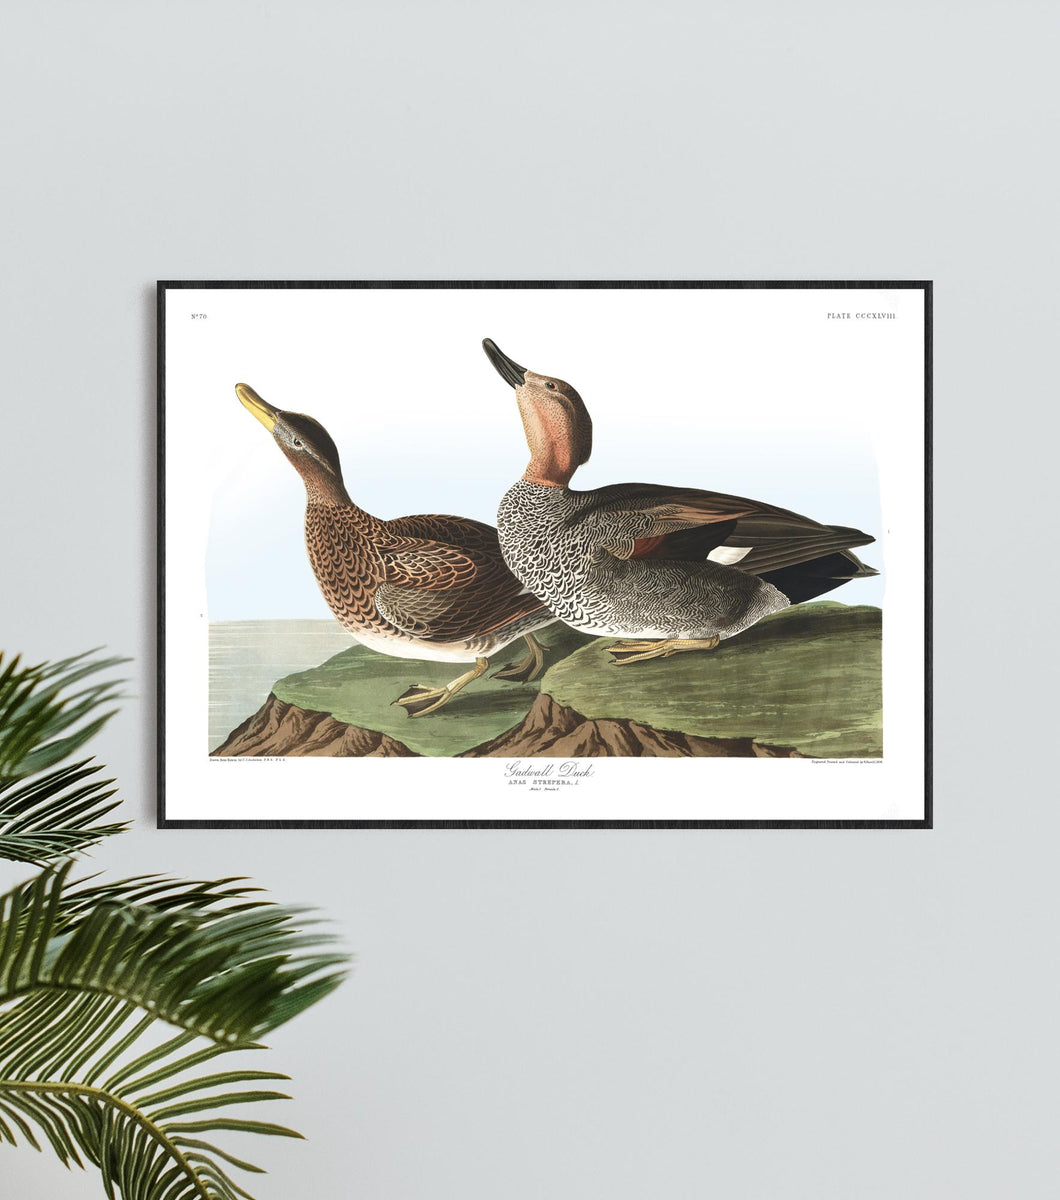 Gadwall Duck Print by John Audubon